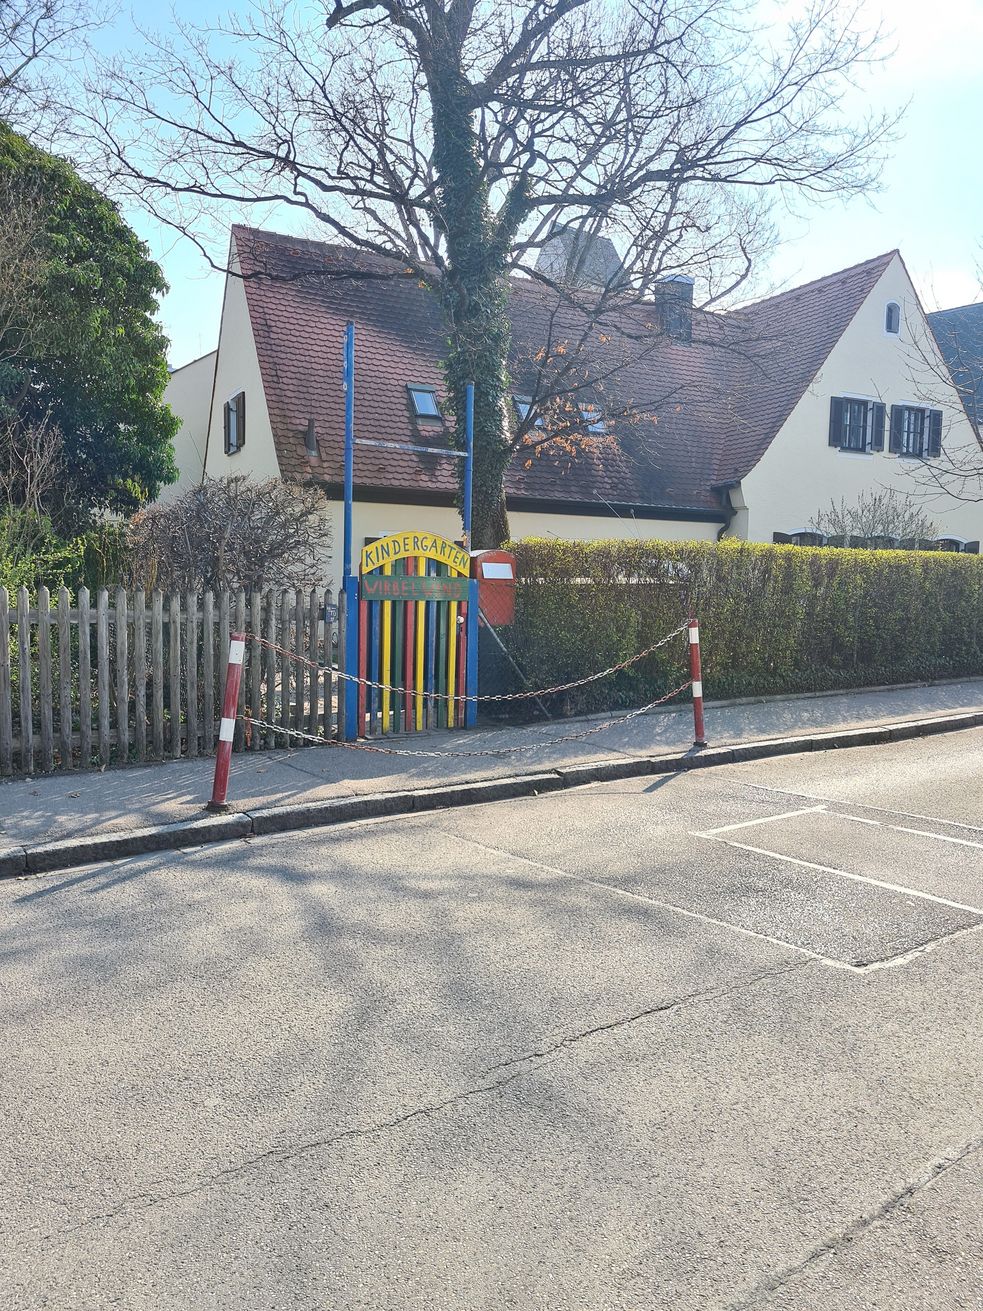 Buntes Gartentor, Eingang zum Kindergarten mit Absperrung zur Straße hin